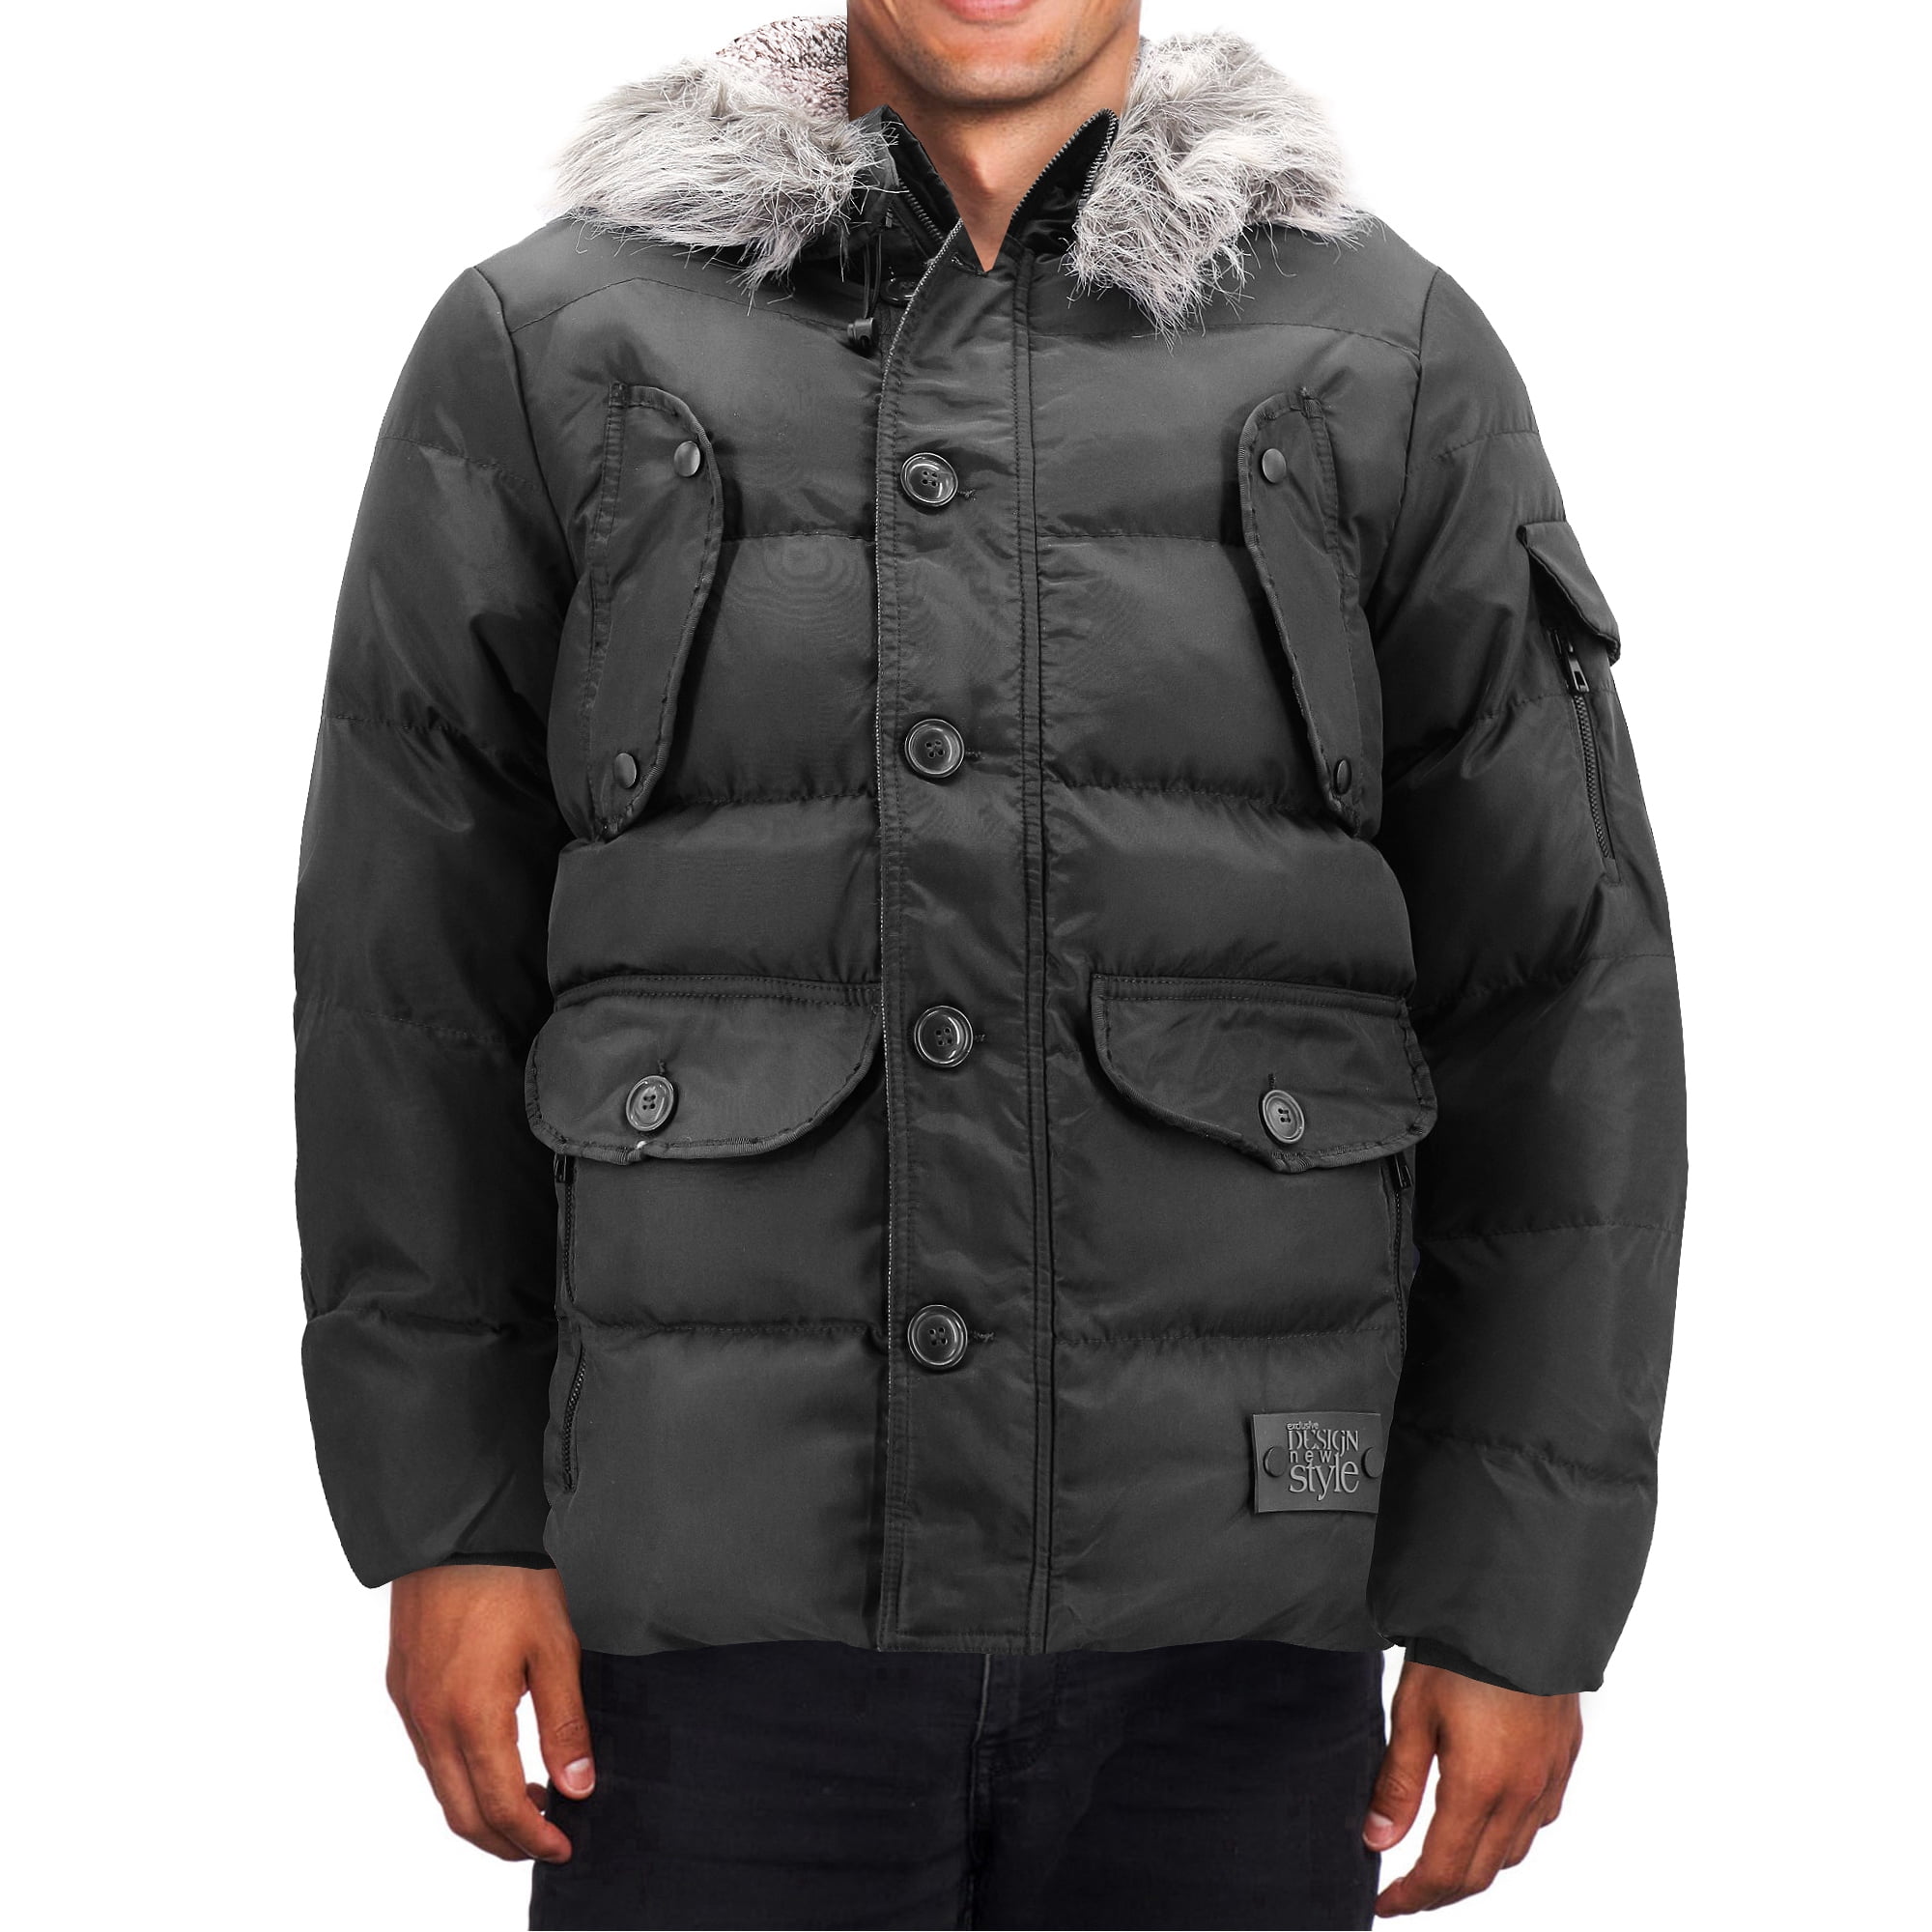 Mens Fleece Fur Lined Jacket Padded Coat Check Winter Warm Bomber Biker Outwear 